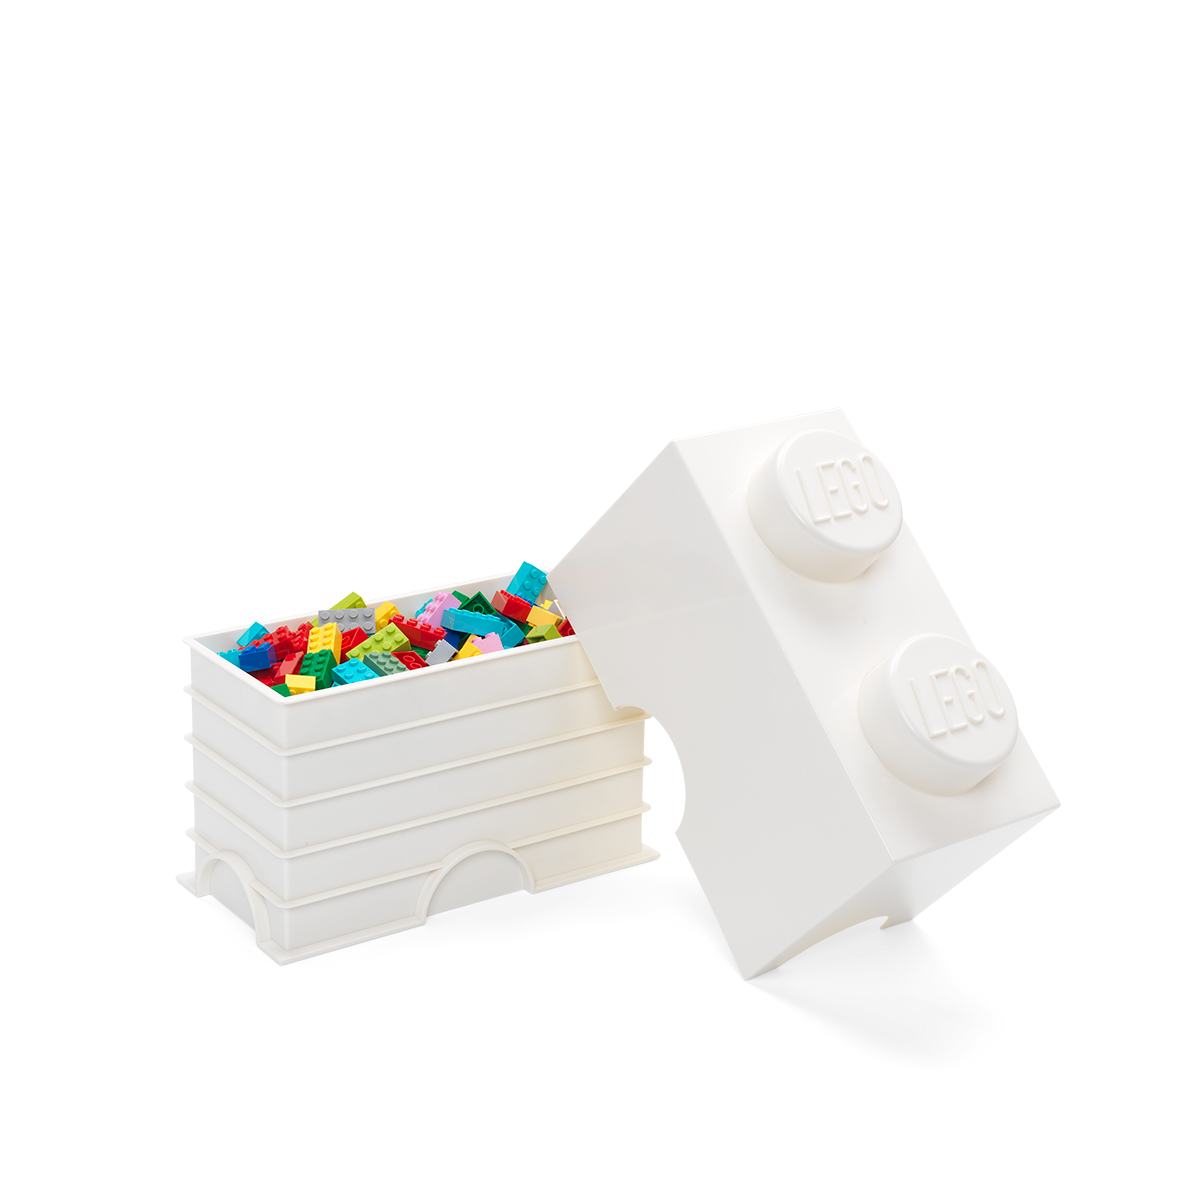 Contenedor Lego Brick 2